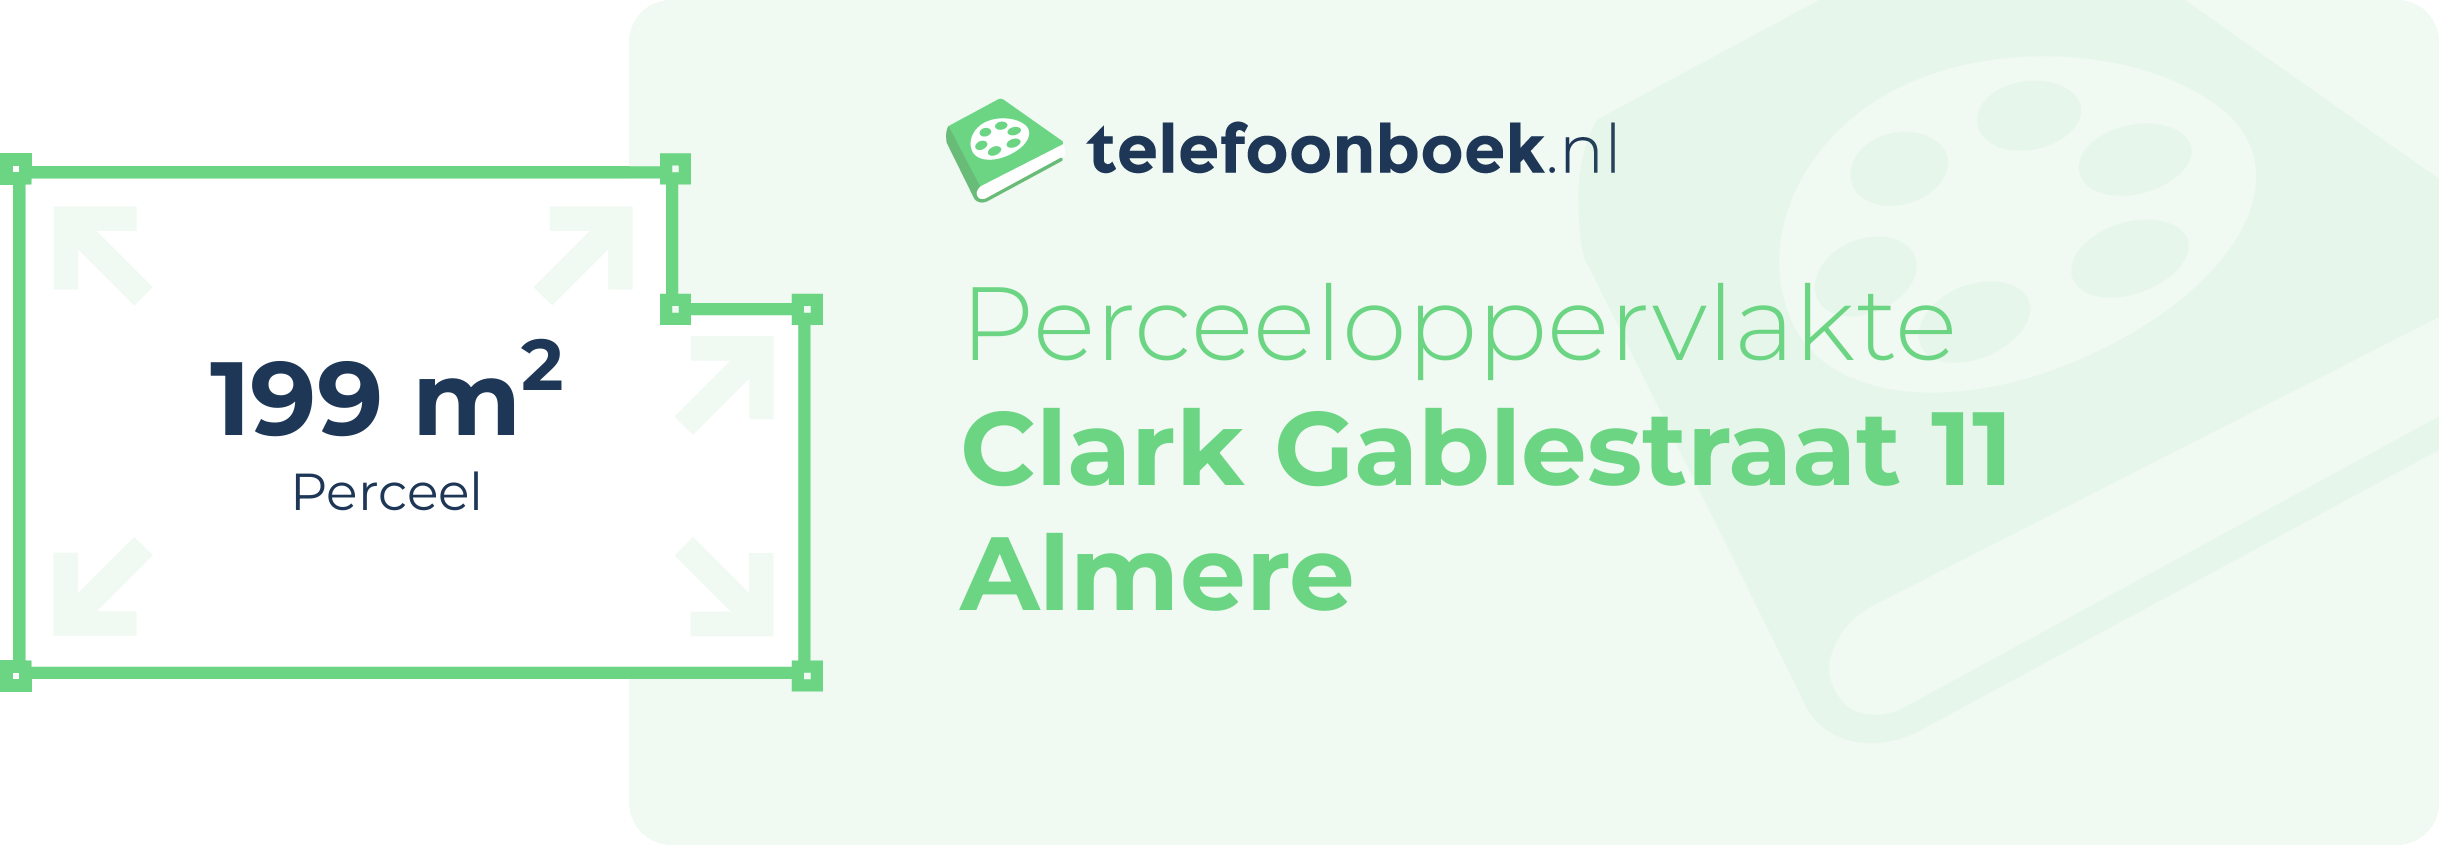 Perceeloppervlakte Clark Gablestraat 11 Almere